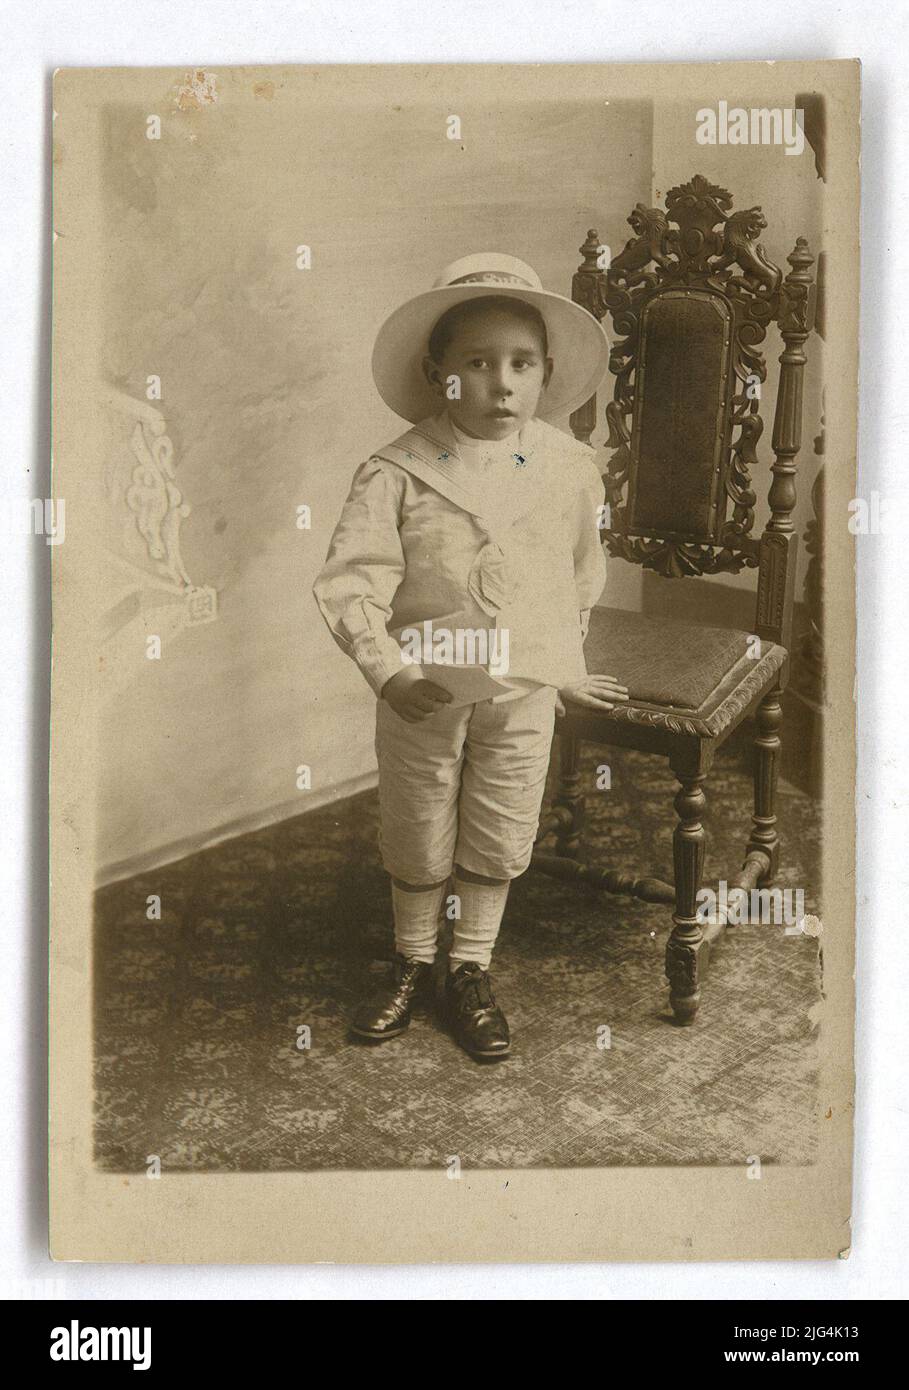 Photographie de Joaquín Collar Serra. Photographie d'enfants par Joaquín Collar, avec un chapeau, habillé en blanc, avec un papier dans sa main et avec sa main penchée sur une chaise. Au dos, lire: · Carte postale/carte SR ', le sceau du photographe:' C. NUÑEZ -FOTOGRAPHIC/SALAMANCA/MARCAS 1 ', ET ÉCRIT À LA MAIN:' JOAQUÍN COLLAR i SERRA 'ENREGISTREMENT - TRANSCRIPTION:' CARTE POSTALE/SR NUÑEZ -FOTOGRAPHIC/SALAMANCA/MARCAS 1 '. ENREGISTREMENT - EMPLACEMENT : INVERSE. ENREGISTREMENT - TRANSCRIPTION:' JOAQUÍN COLLIER I SERRA '. ENREGISTREMENT - EMPLACEMENT : INVERSE Banque D'Images